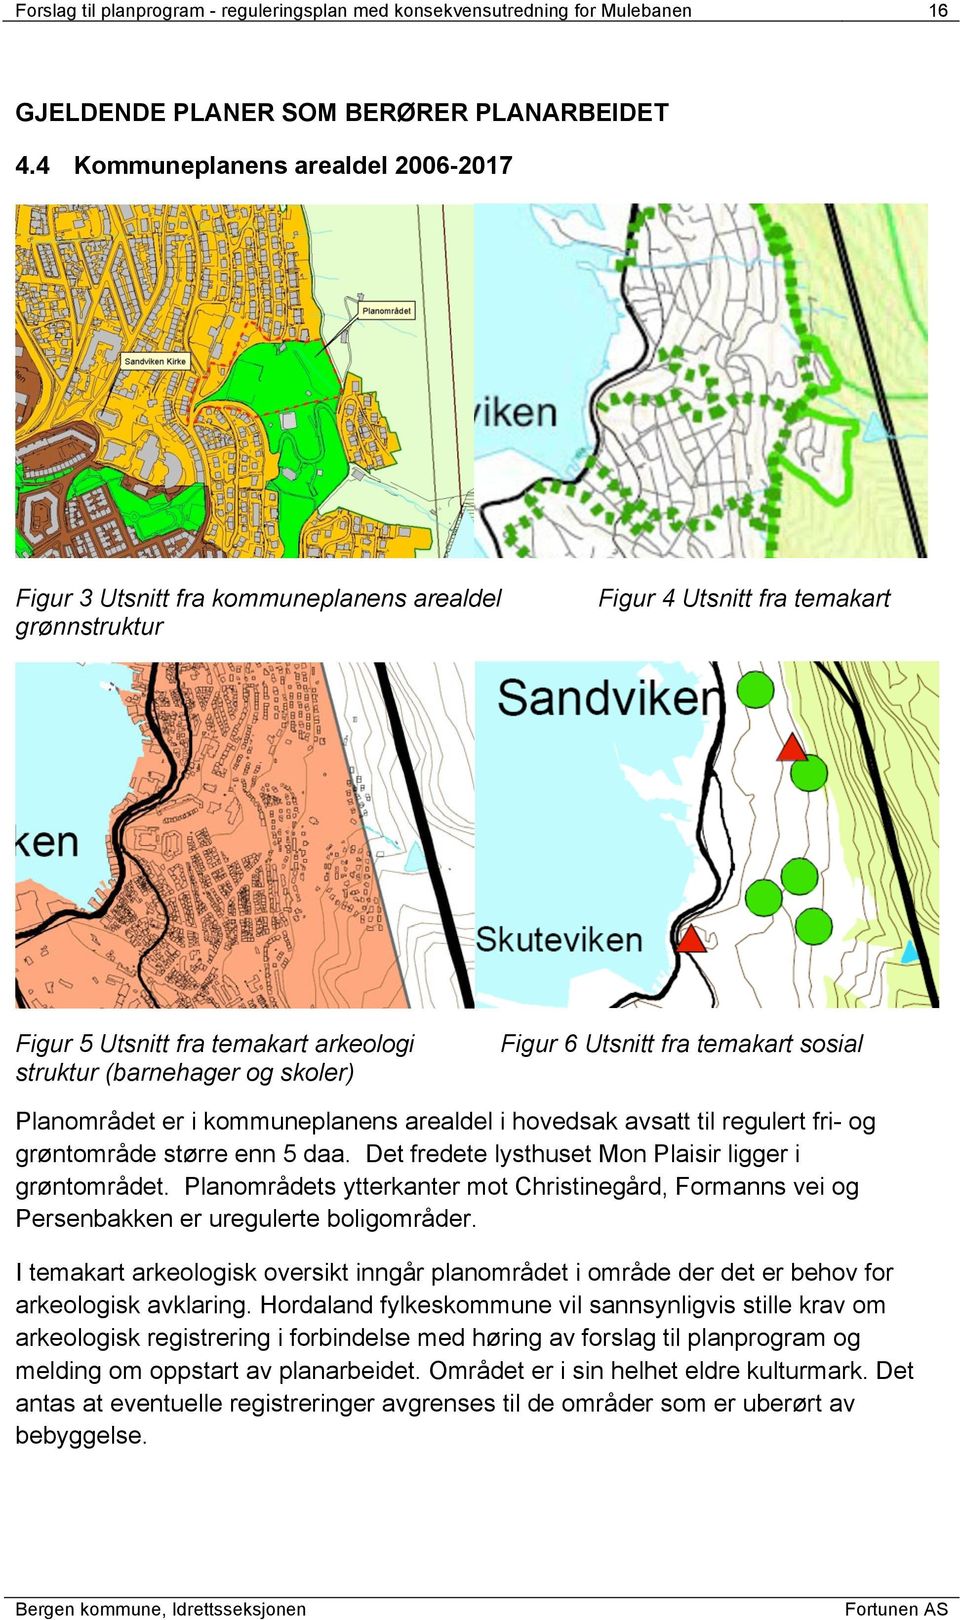 6 Utsnitt fra temakart sosial Planområdet er i kommuneplanens arealdel i hovedsak avsatt til regulert fri- og grøntområde større enn 5 daa. Det fredete lysthuset Mon Plaisir ligger i grøntområdet.